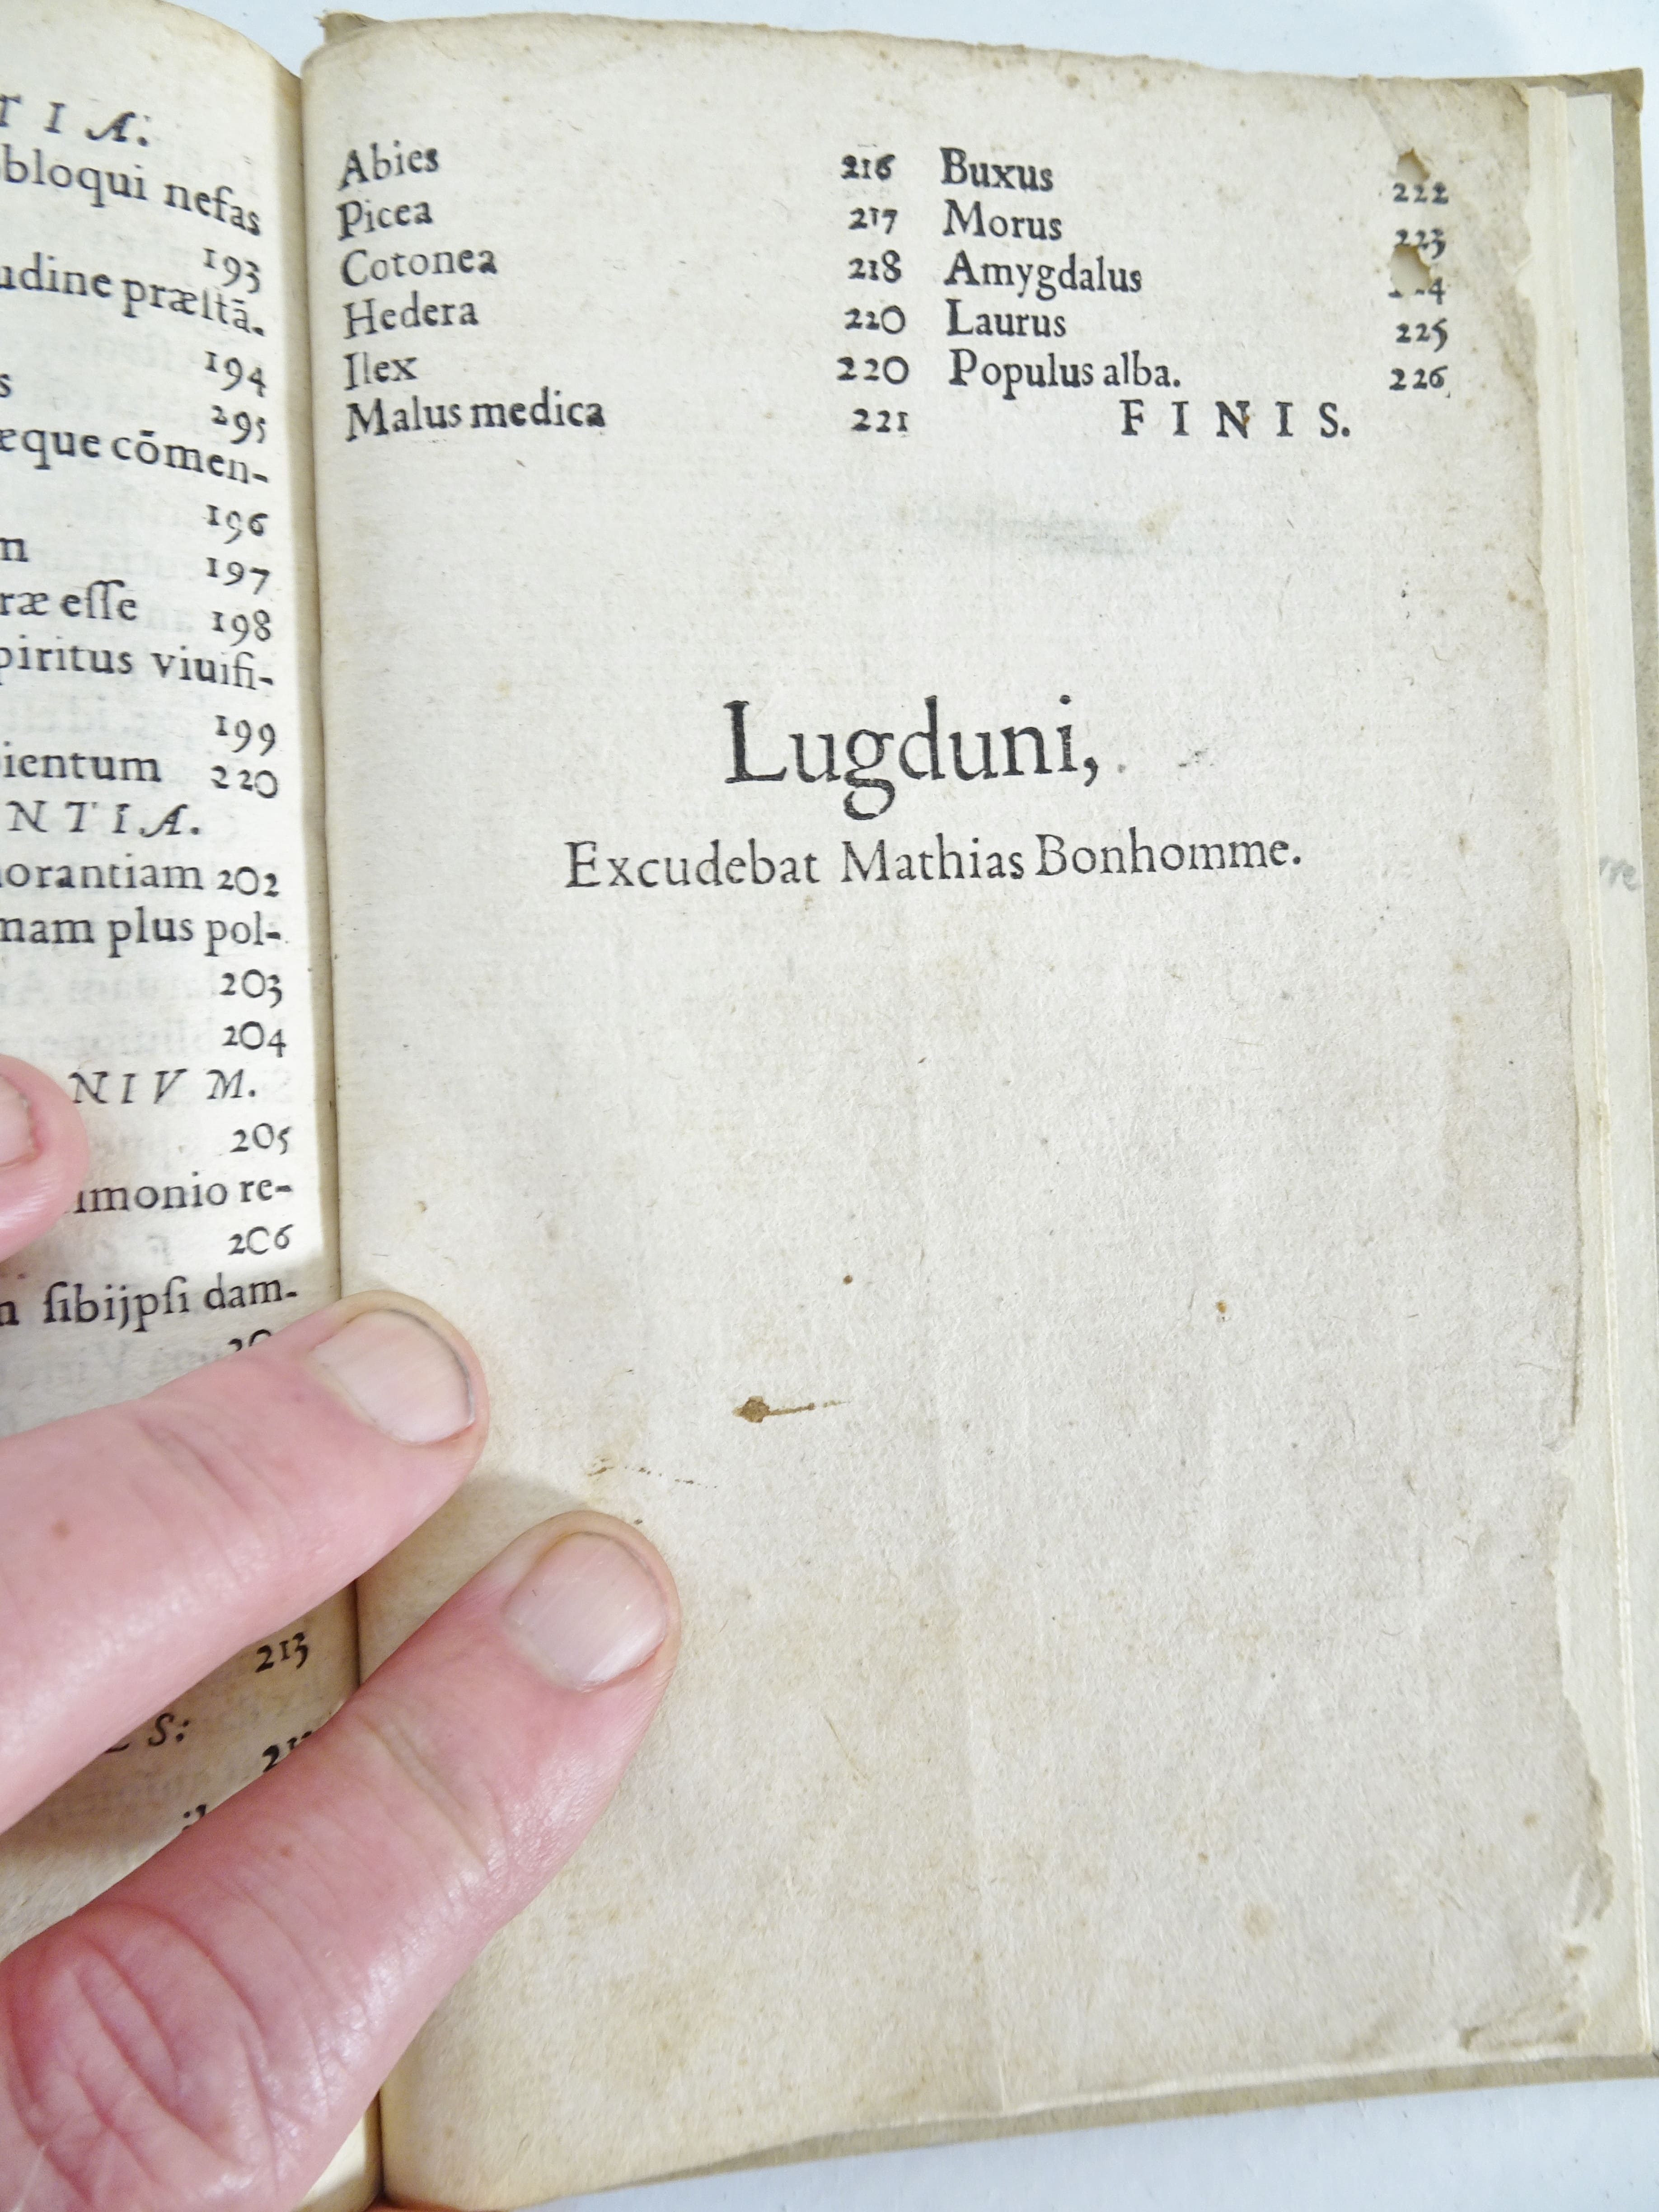 |Emblemata| Alciati Andrea, "Emblemata D.A. Alciati, denuo ab ipso Autore…", 1551 - Image 19 of 21